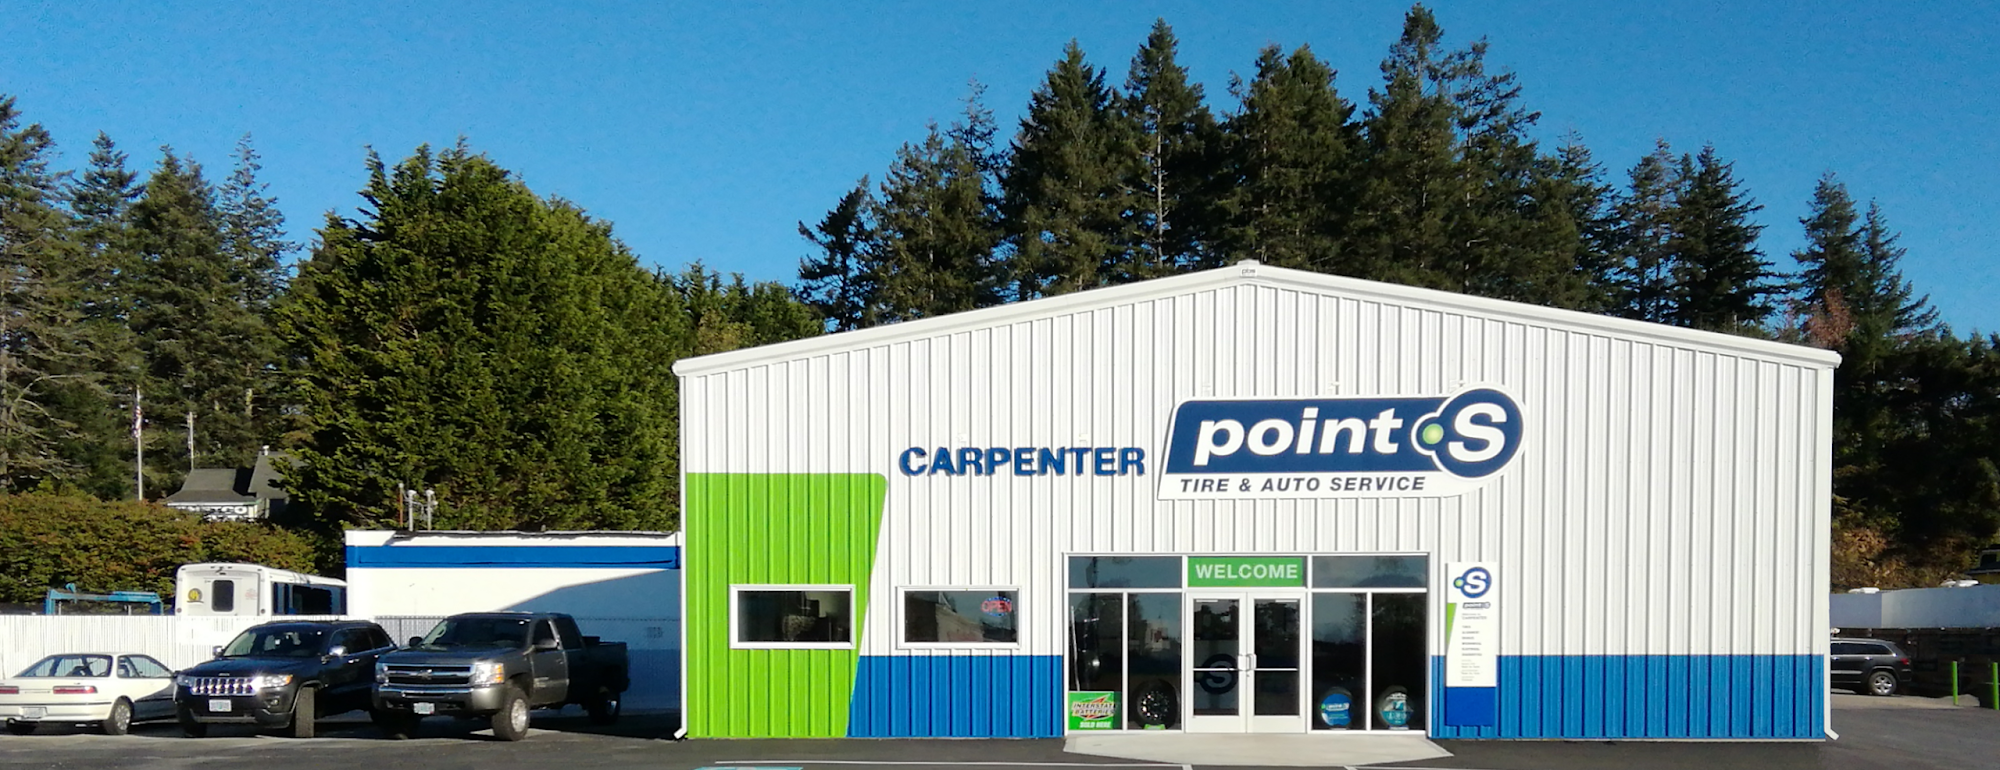 Carpenter Point S Tire & Auto Service